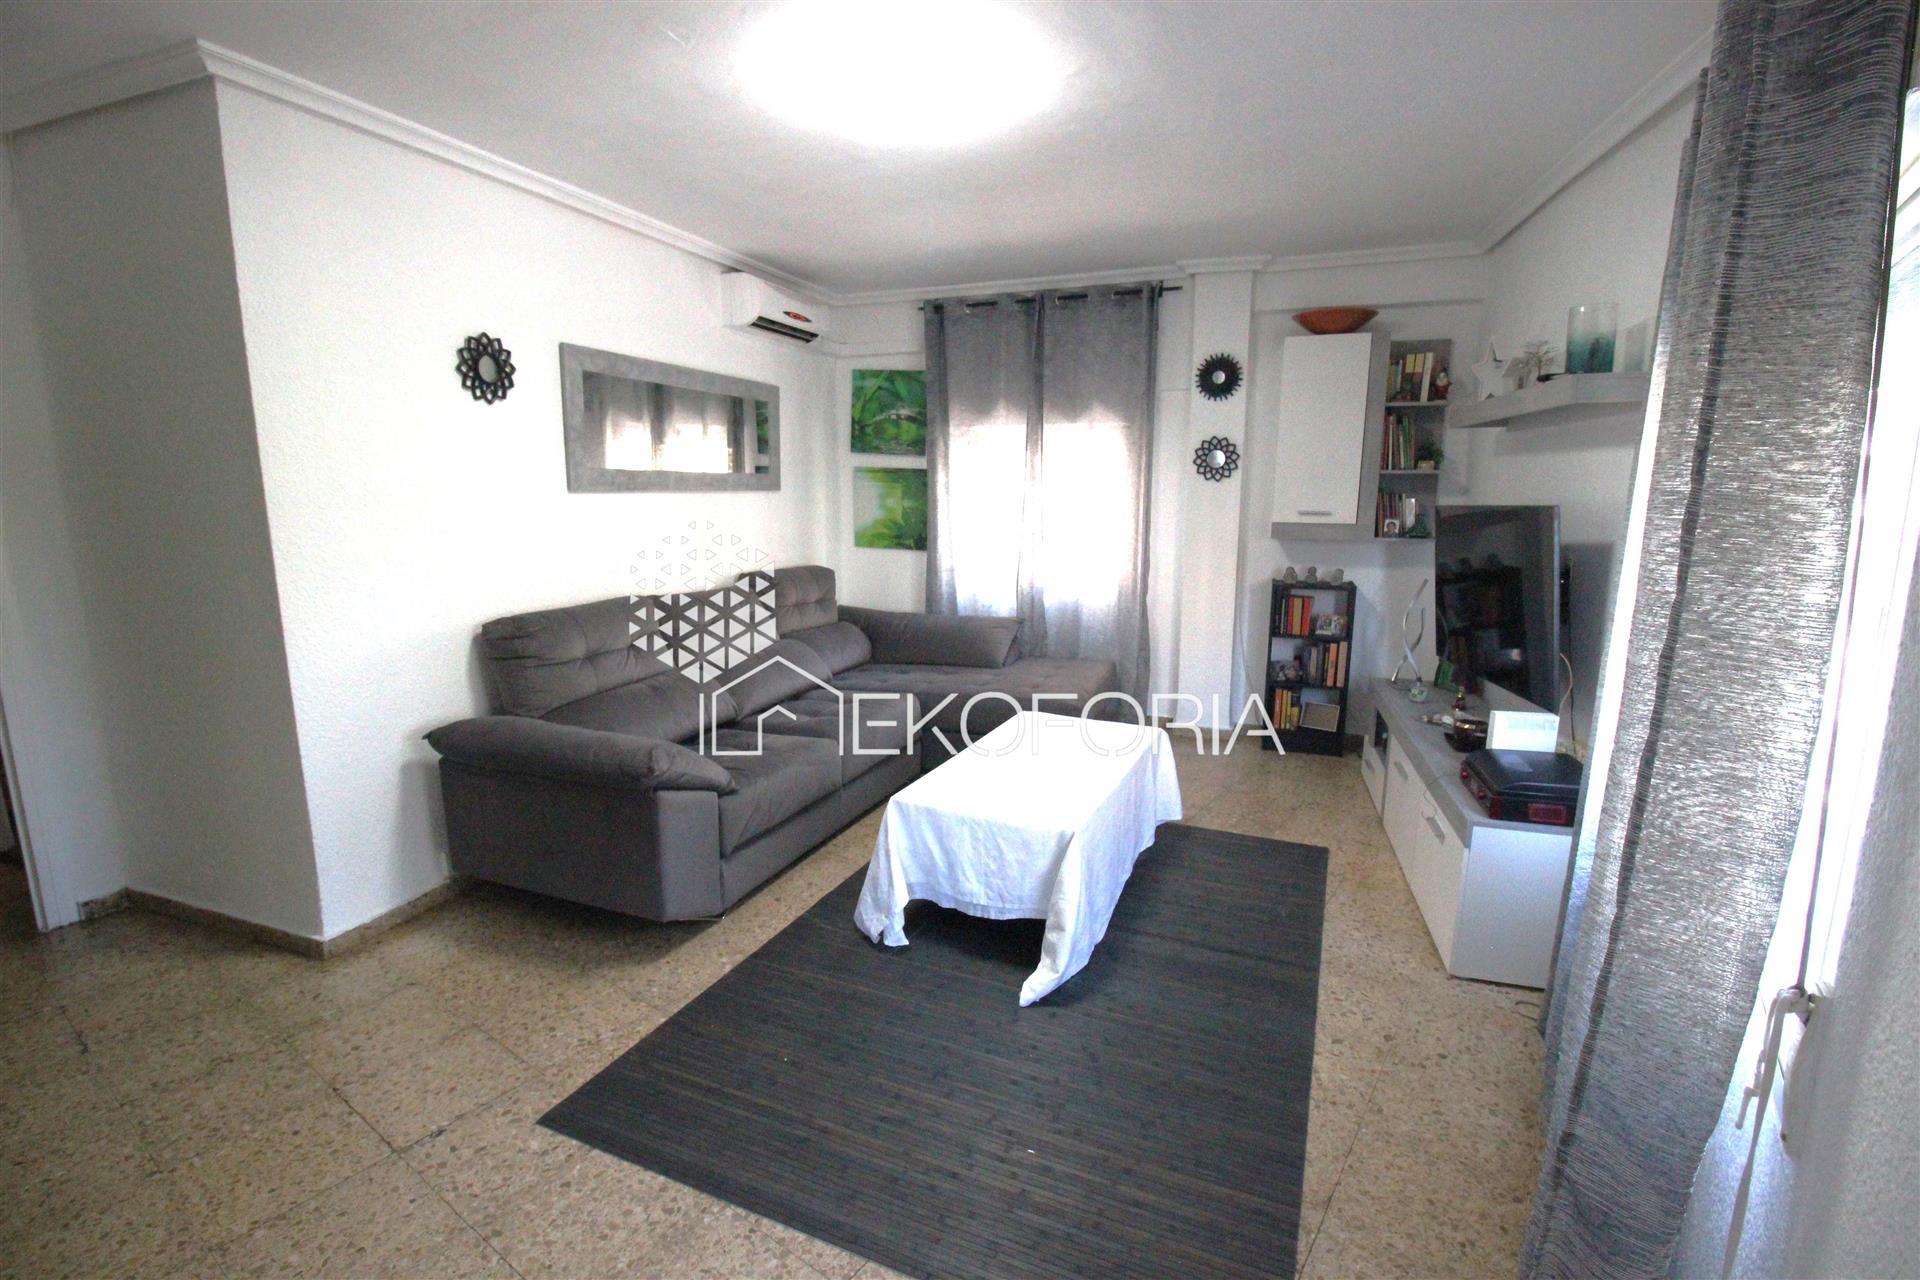  Apartamento de 4 dormitorios cerca de Russafa y Le Túria (Valencia)